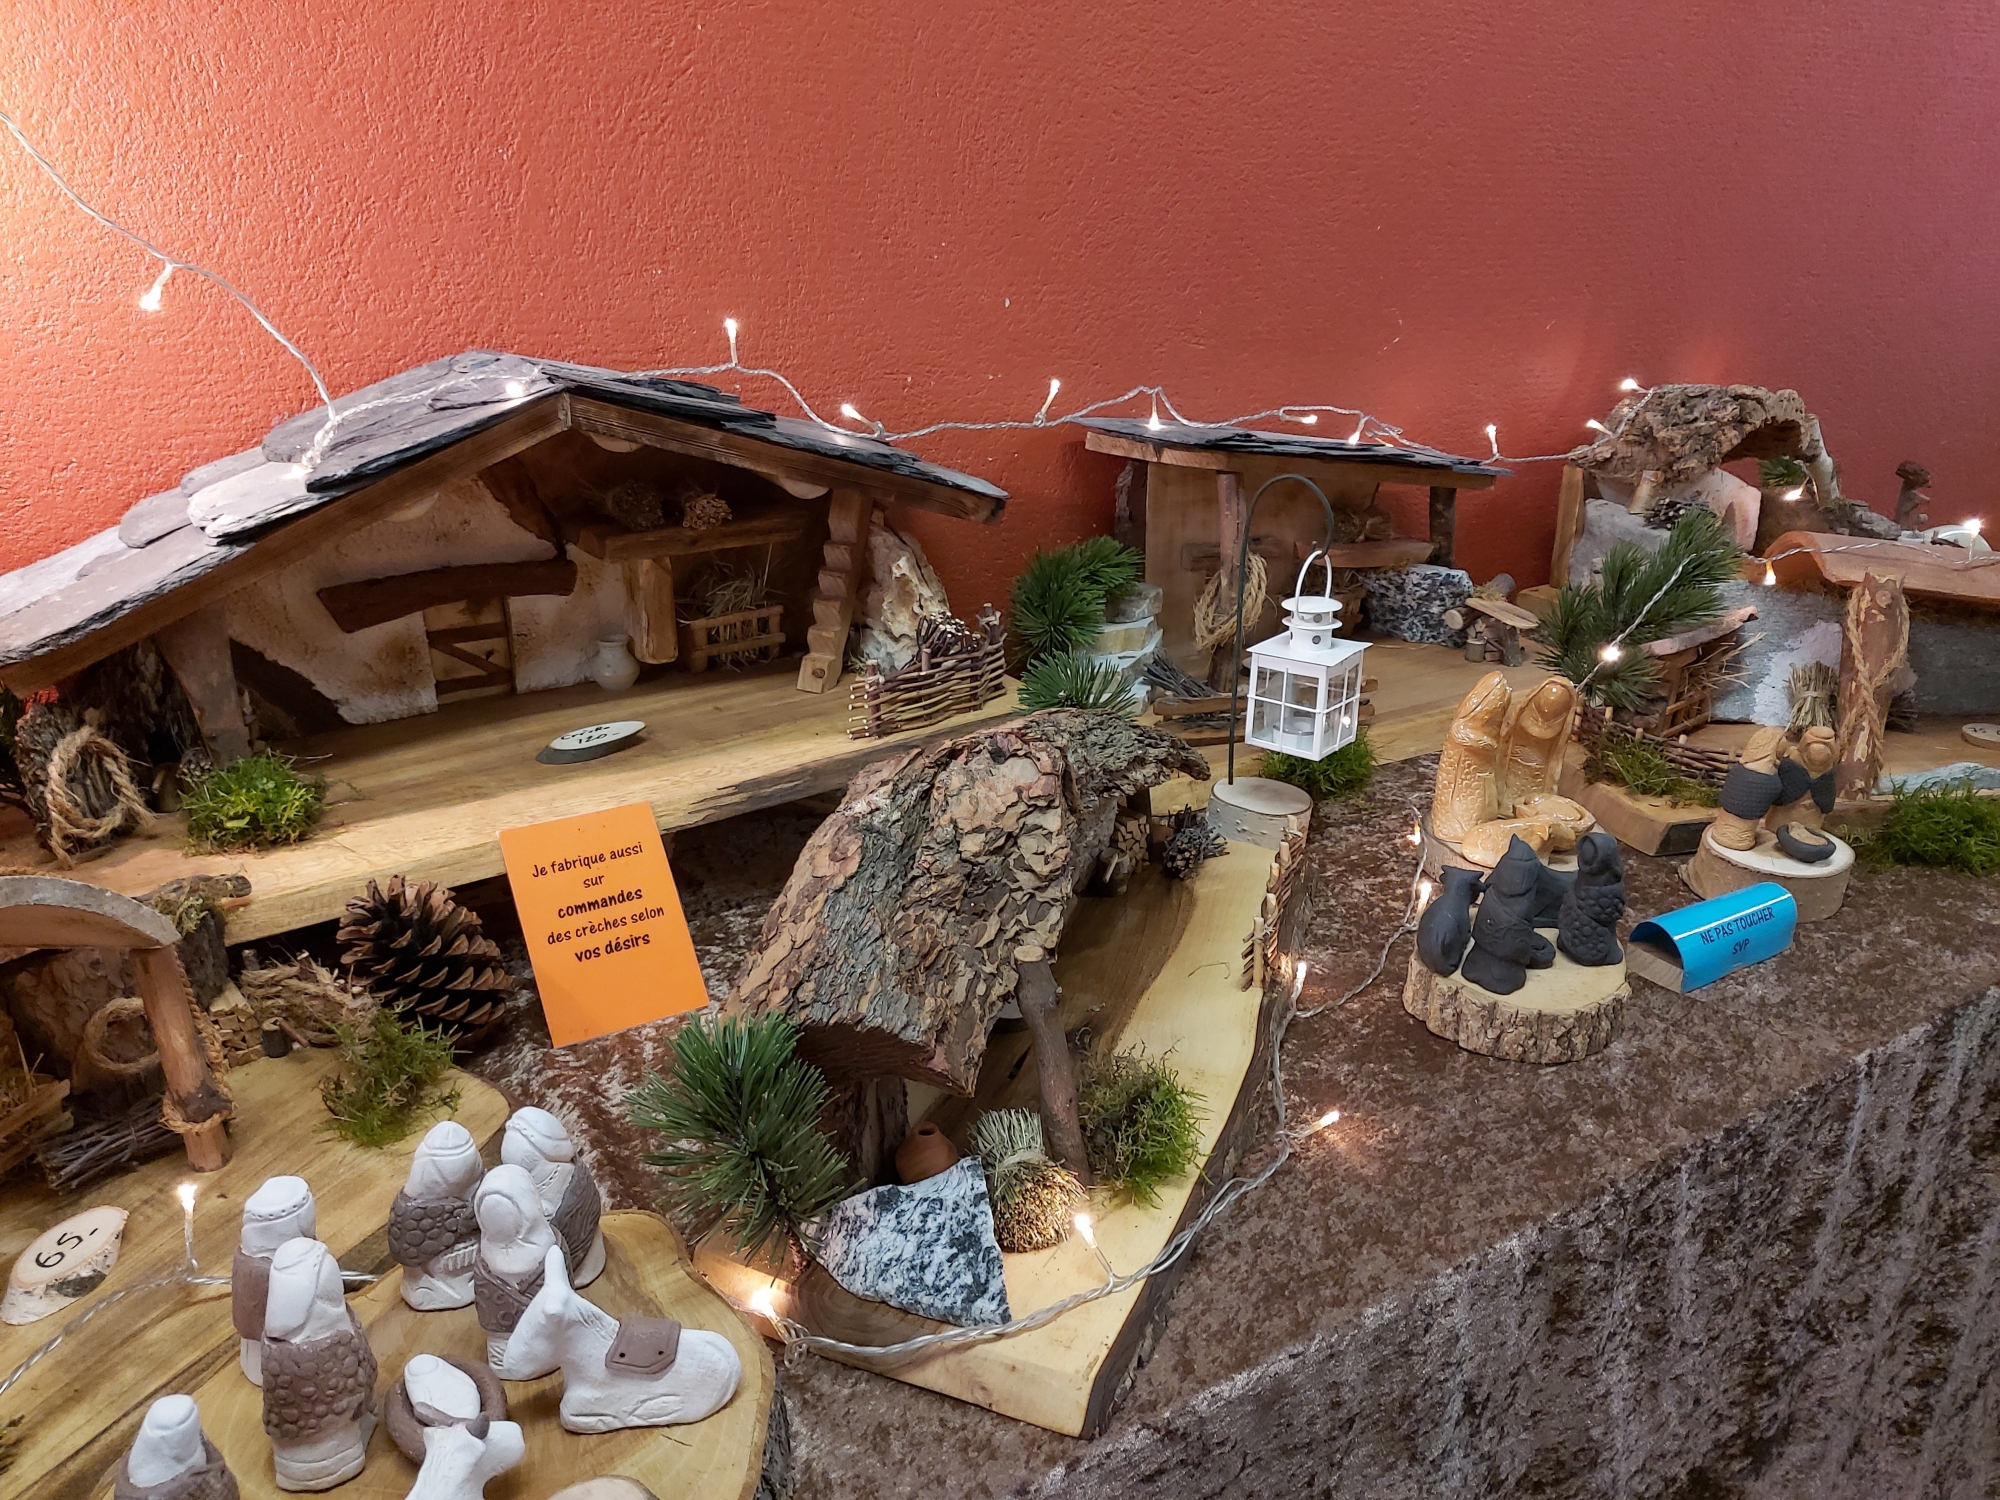 Les visiteurs pourront notamment découvrir des crèches de Noël artisanales.